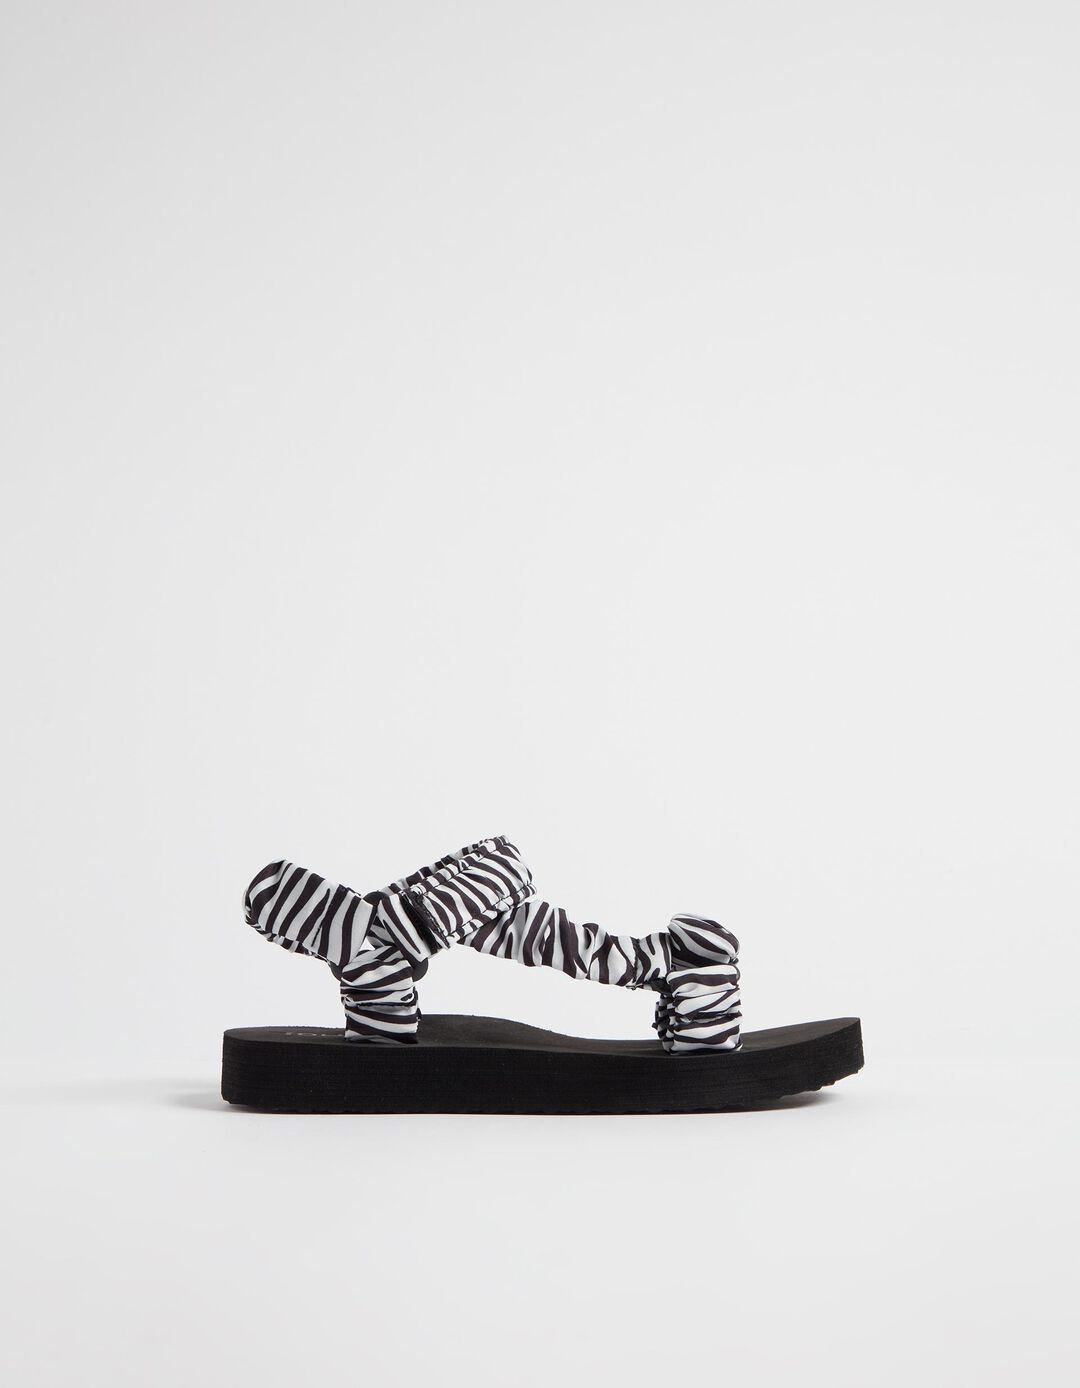 Zebra Print Sandals, Women, Black/White